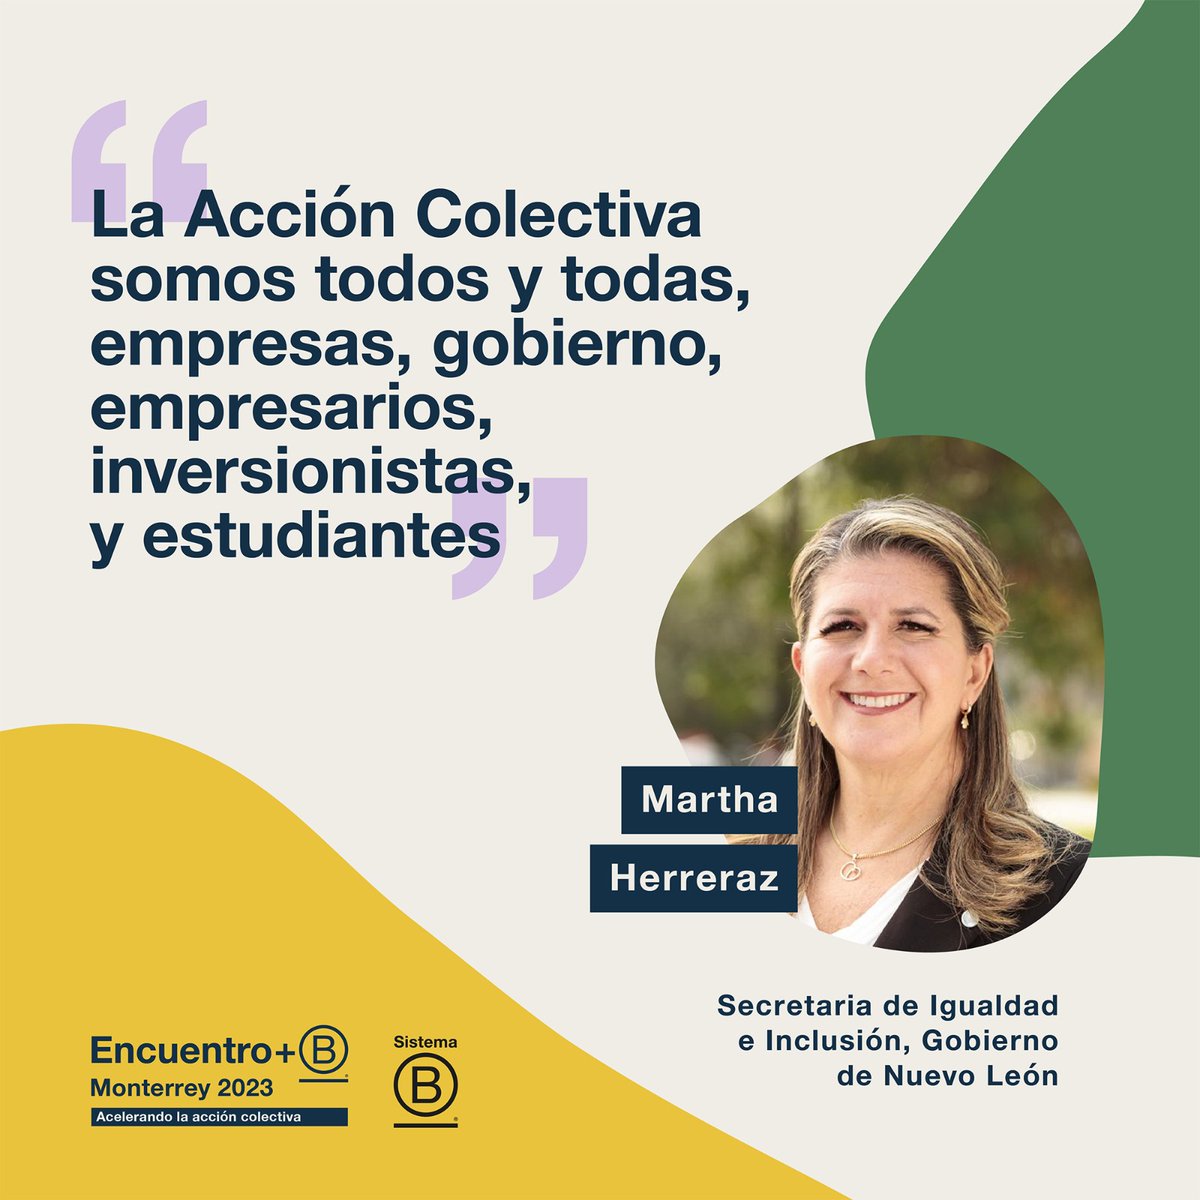 En el Encuentro+B Monterrey 2023 hay más de 800 personas de toda América Latina, personas que trabajan y colaboran desde sus diferentes áreas por una mejor sociedad y un mejor planeta. #EncuentroB #AcciónColectiva